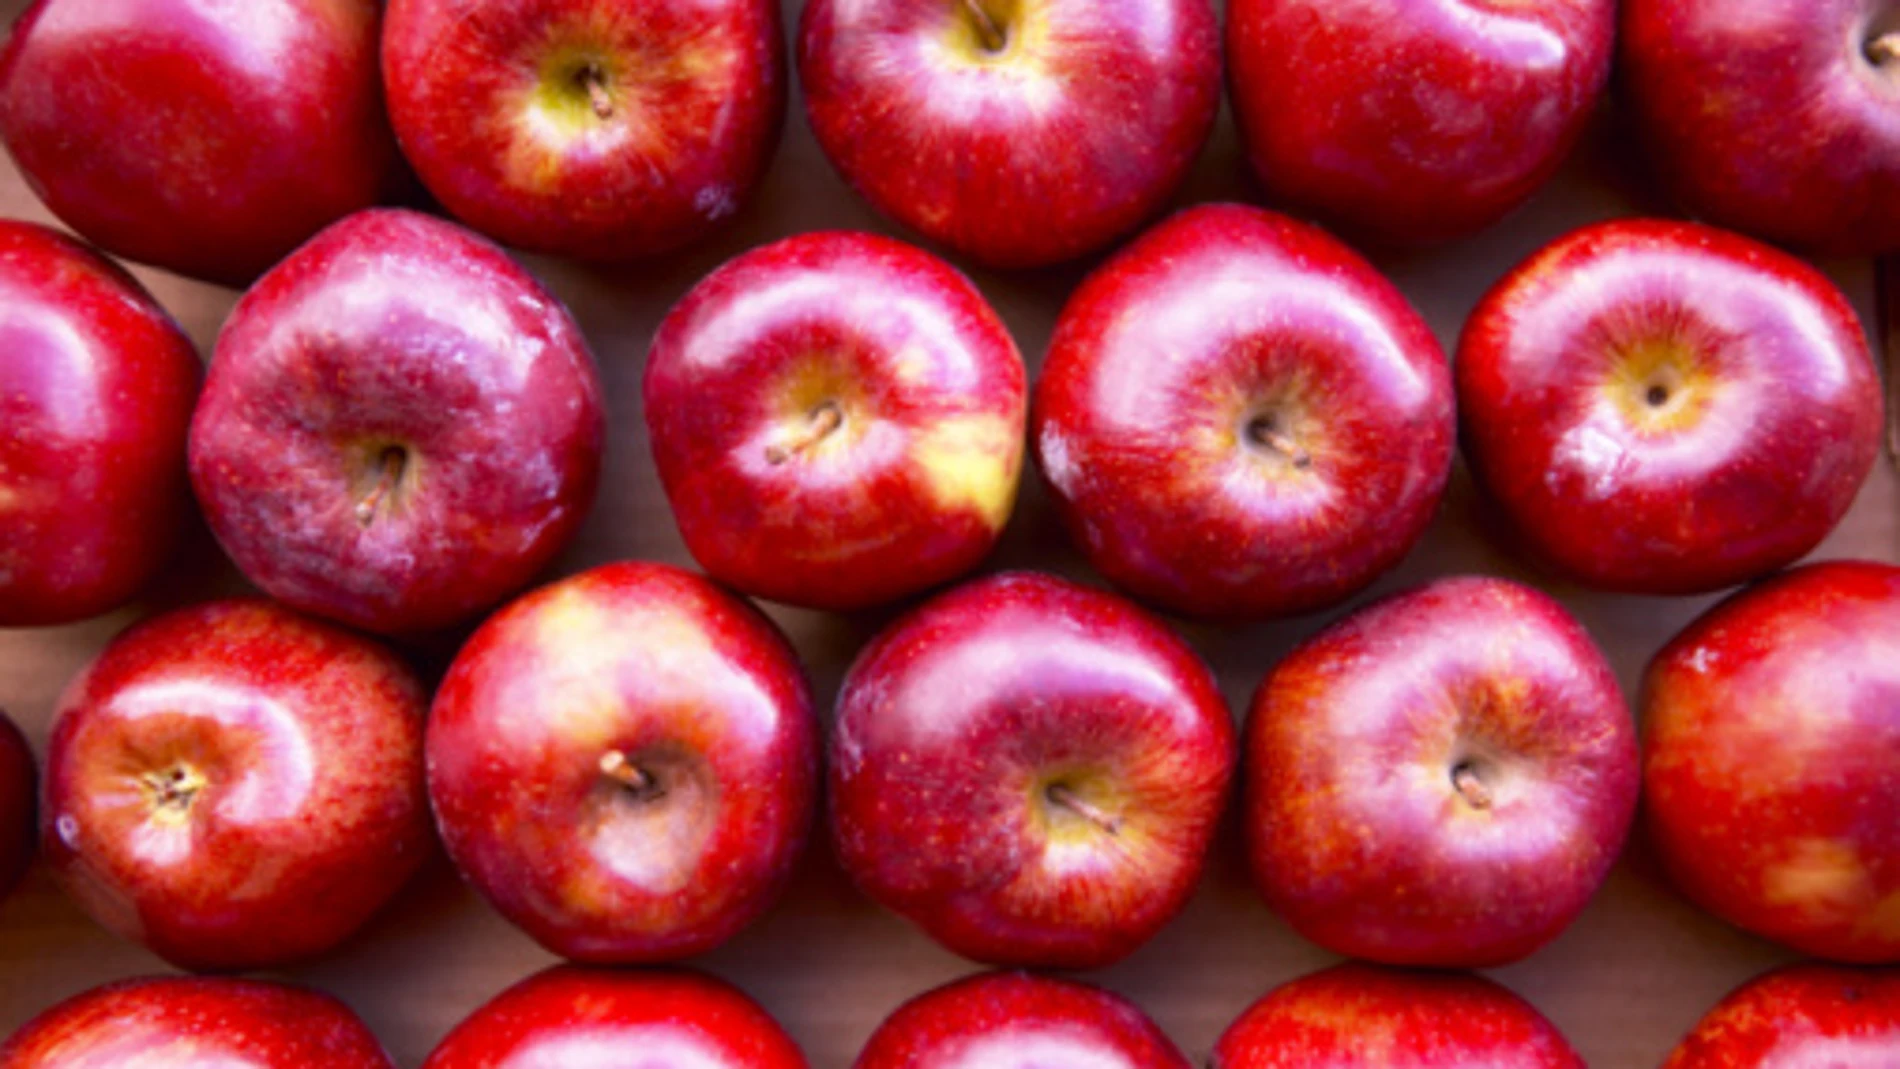 Las manzanas son la fruta más consumida por niños y adolescentes